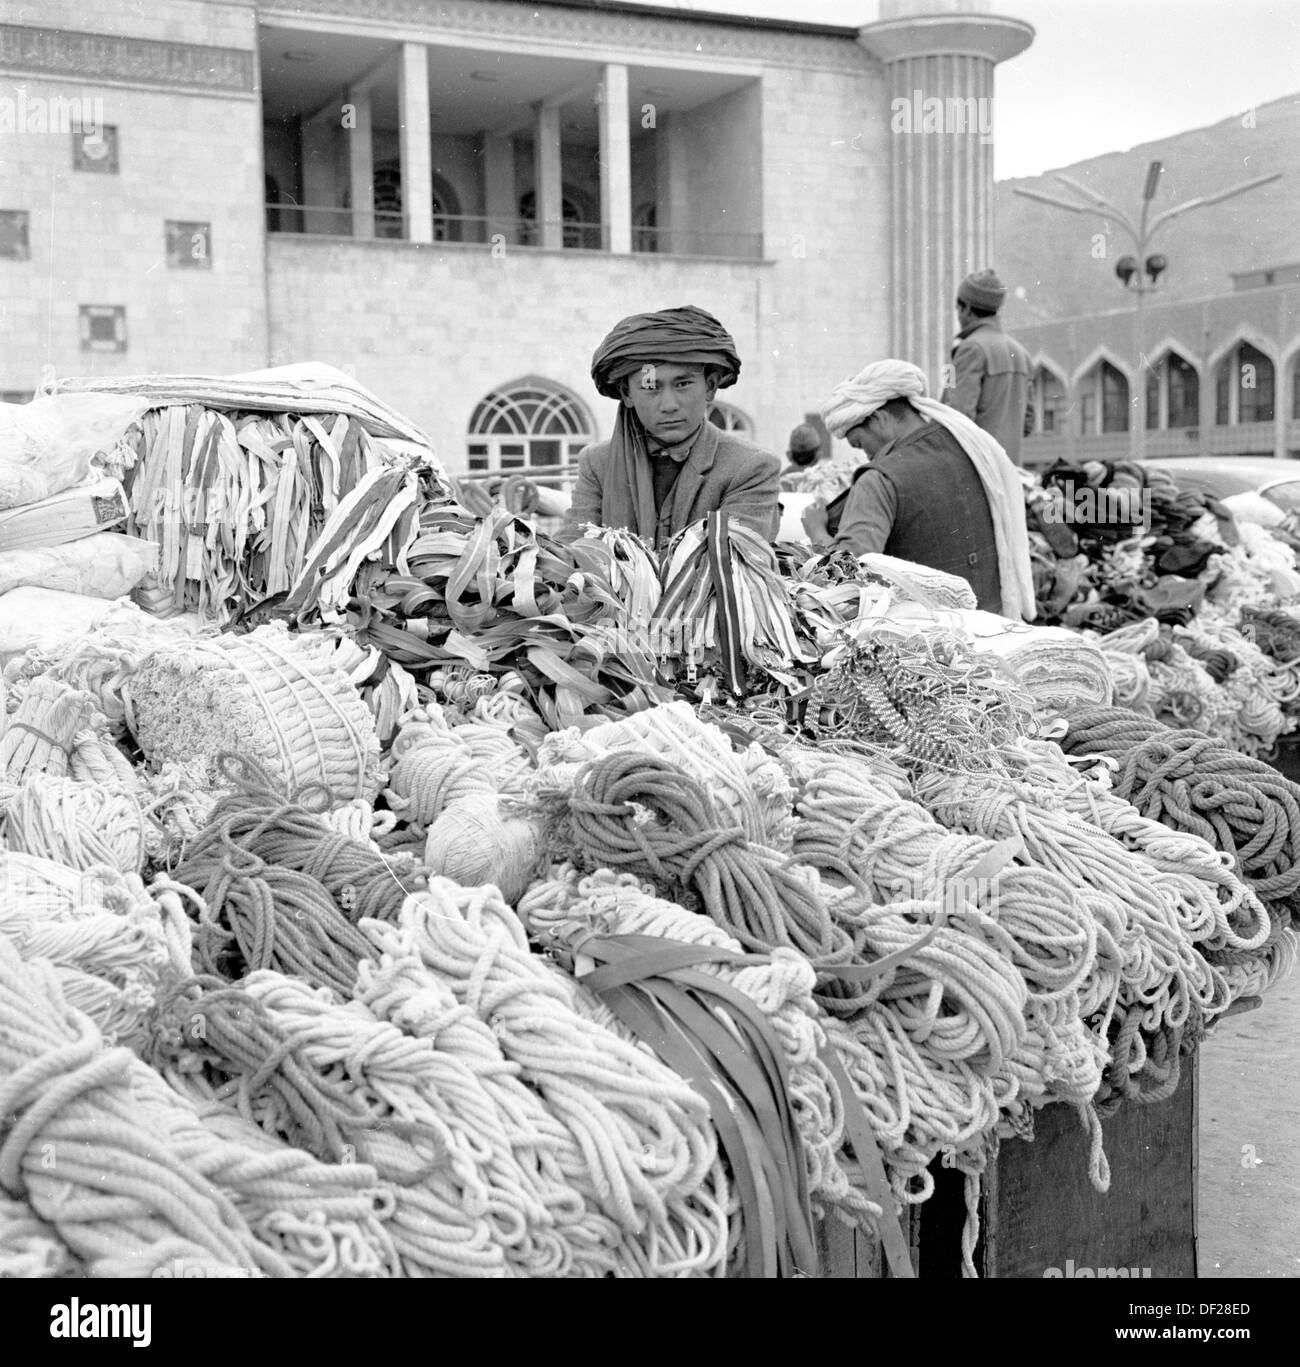 Historisches Bild aus den 1950er Jahren von J Allan Cash, von einem jungen afghanischen Jungen mit dem traditionellen Kopfteil, einem Turban, der neben seinem Marktstand steht und Seilbüschen und Garne zeigt, Kabul, Afghanistan. Stockfoto